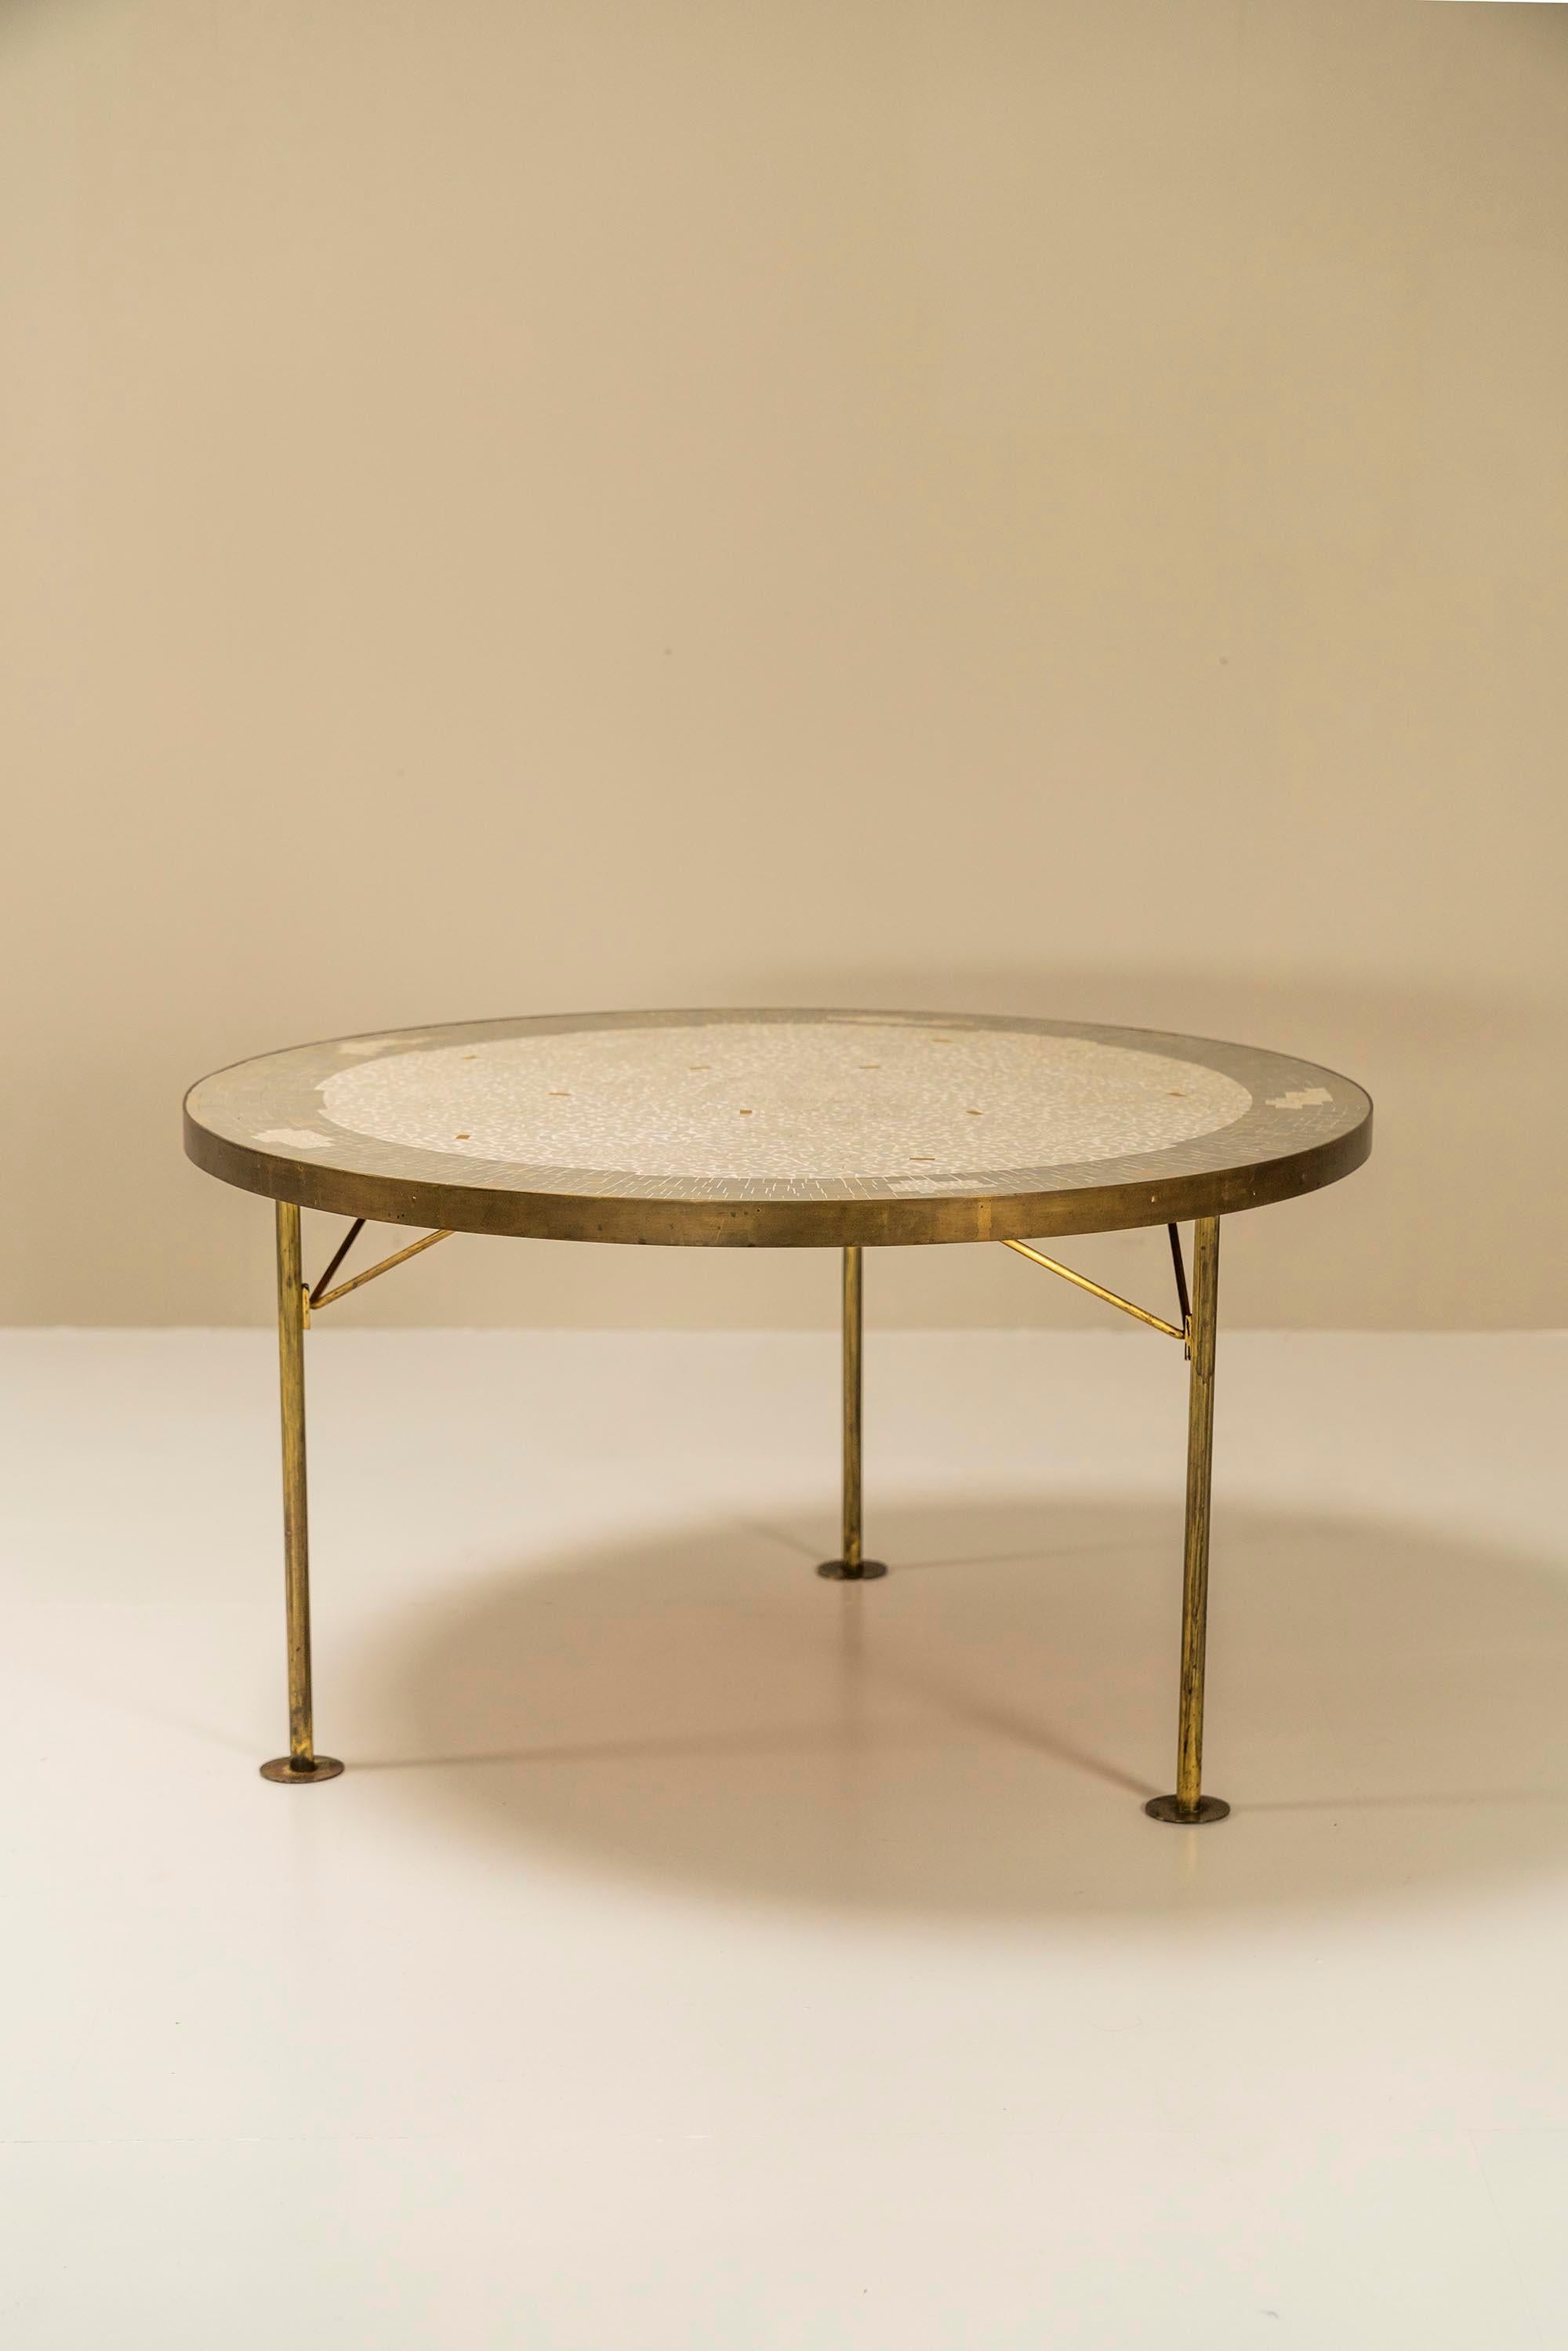 Belle table basse en mosaïque ronde de Berthold Müller-Oerlinghausen d'Allemagne, vers les années 1960. Cette table basse en mosaïque est dotée d'un cadre en laiton et de trois pieds. Le haut en mosaïque présente un motif abstrait composé d'un